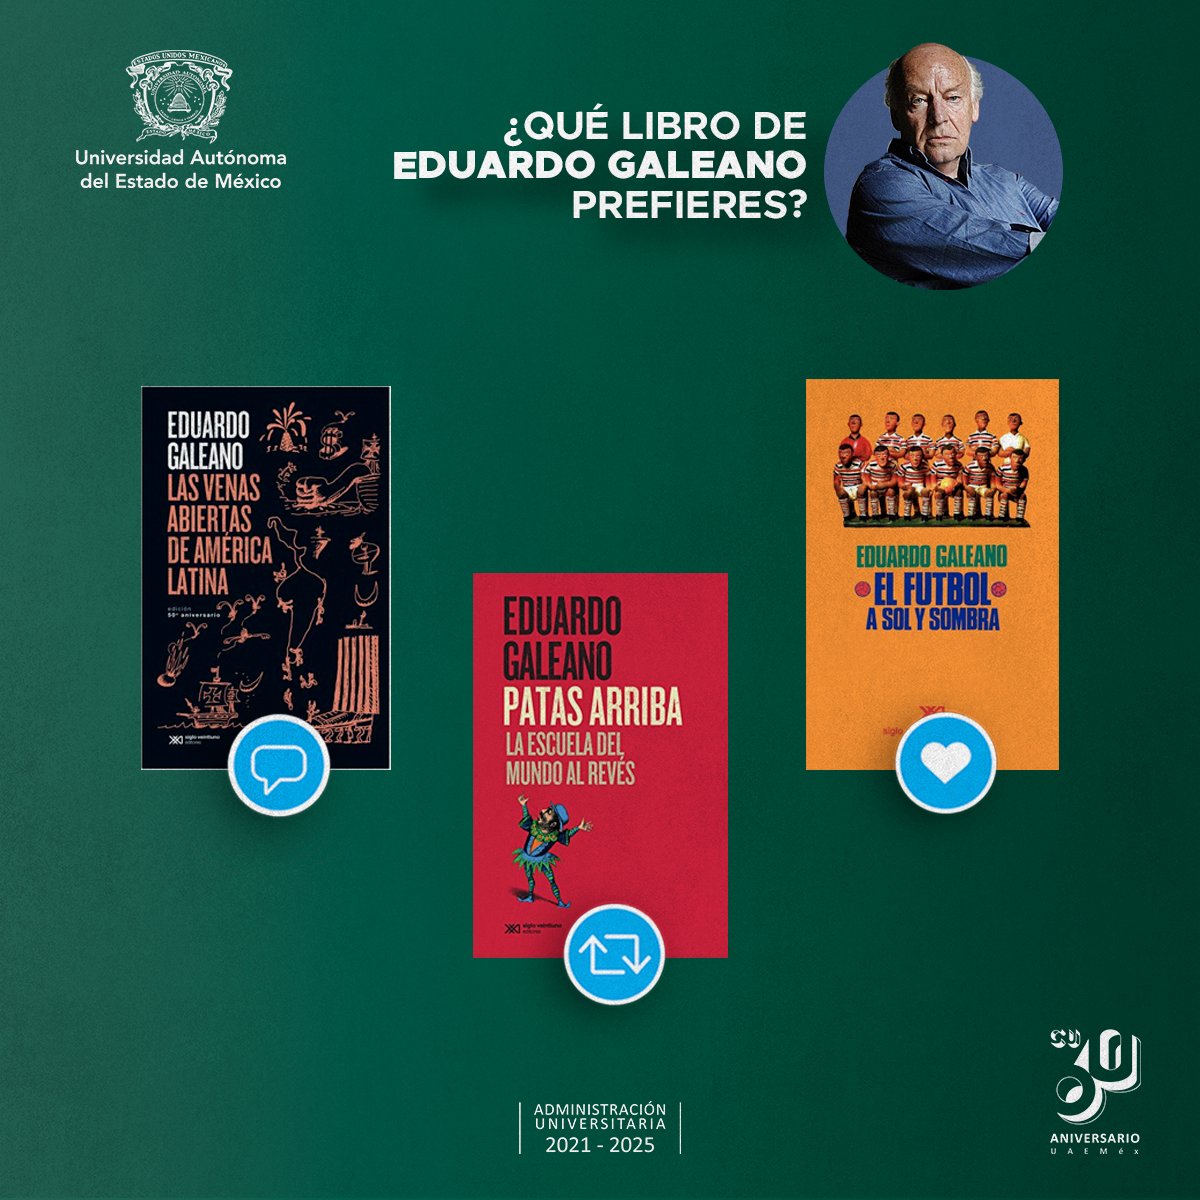 Eduardo Galeano fue uno de los escritores y poetas más grandes de América Latina. ¿Sabías que algunos de sus libros han sido traducidos a veinte idiomas? ¿Cuál es tu favorito? #SomosUAEMéx💚💛